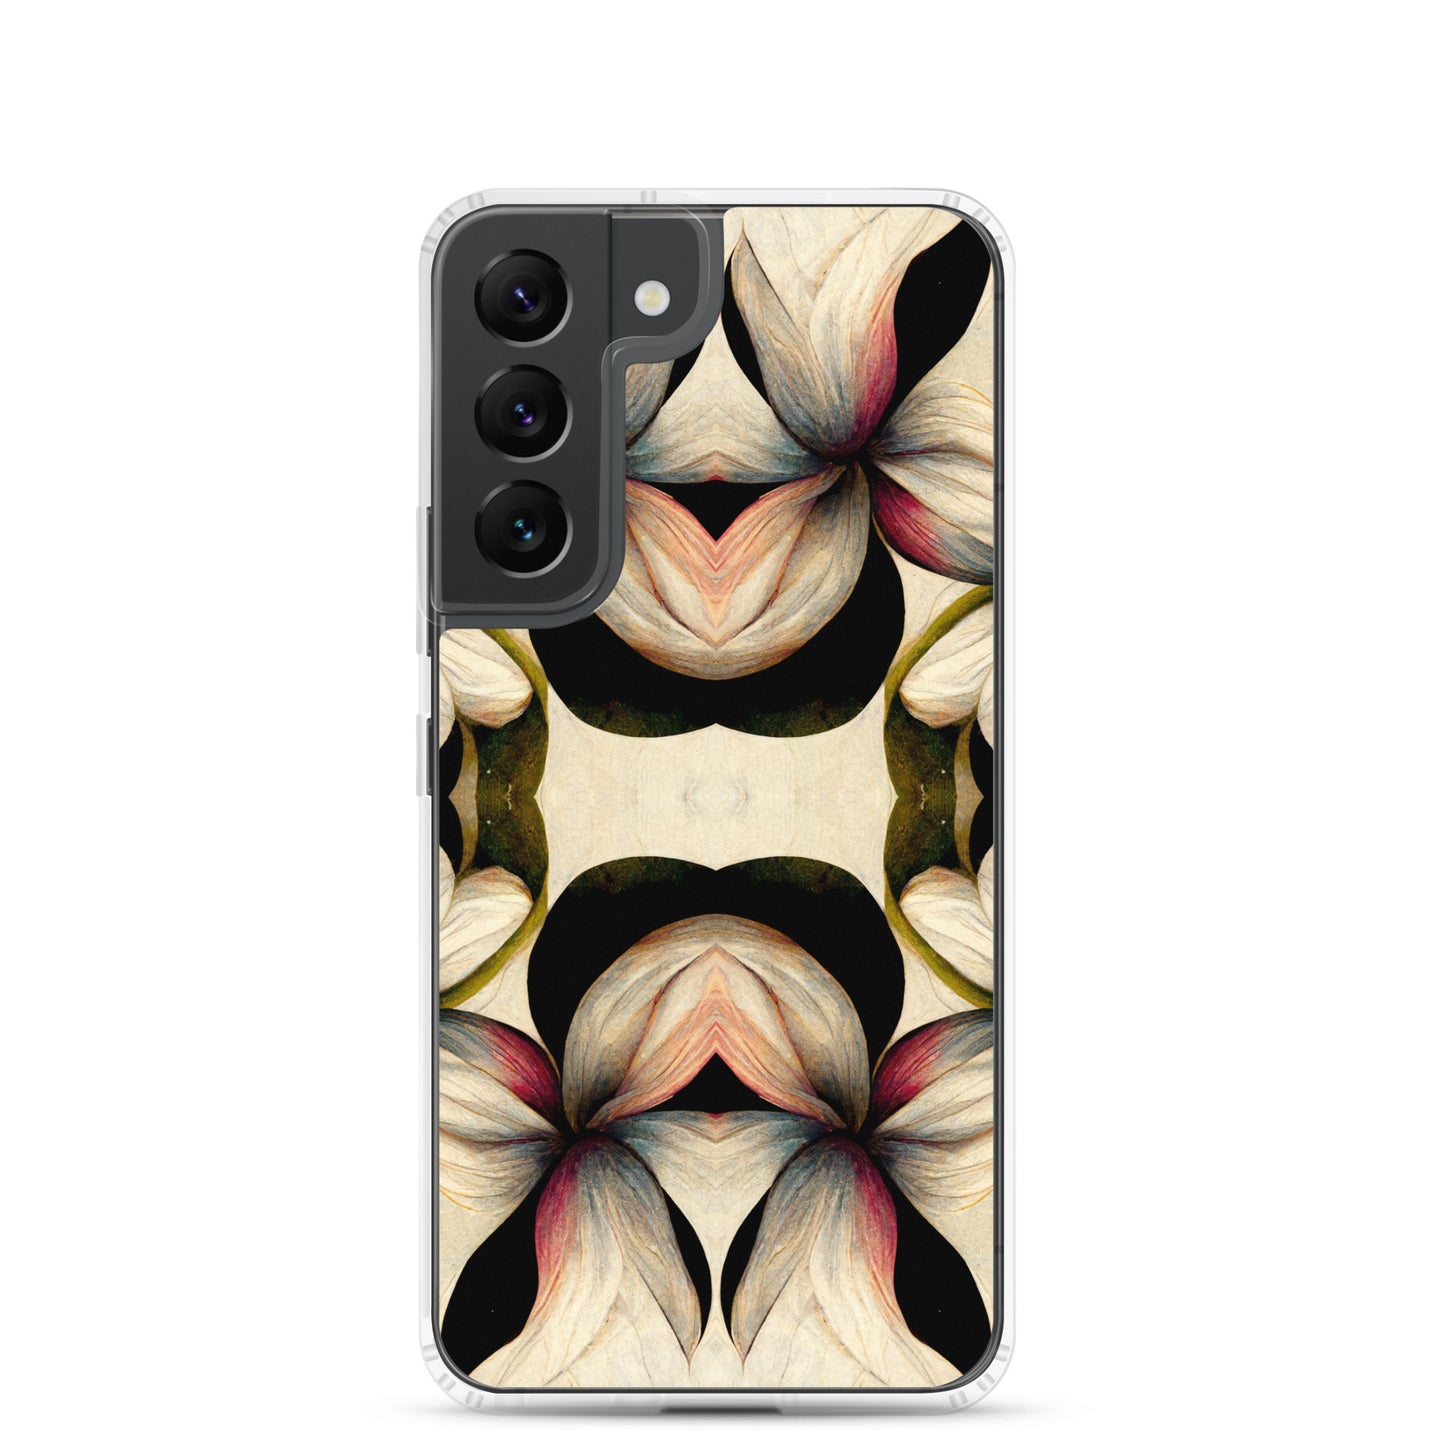 Neduz Designs Genuine Flora 01 Samsung Clear Case